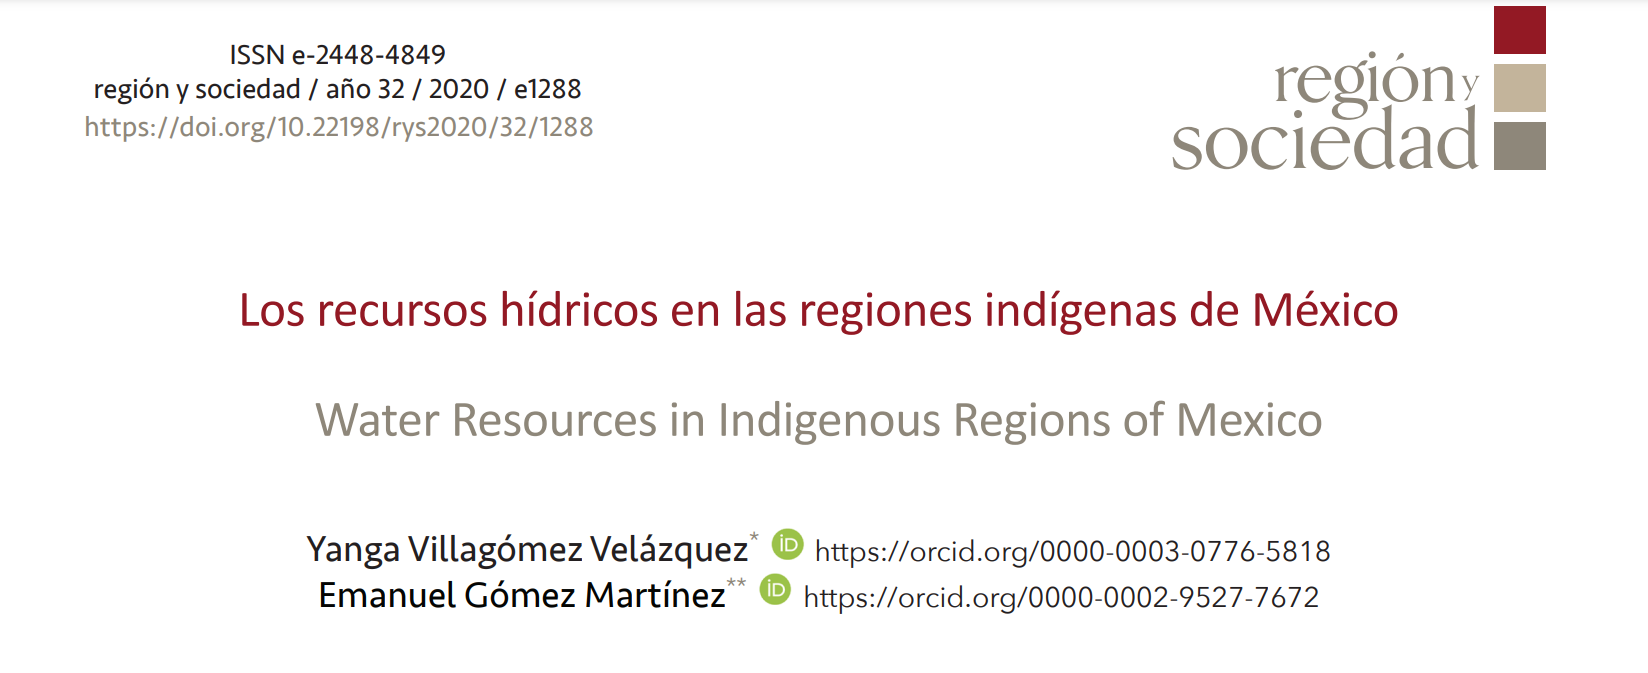 Los recursos hídricos en las regiones indígenas de México (Región y Sociedad)